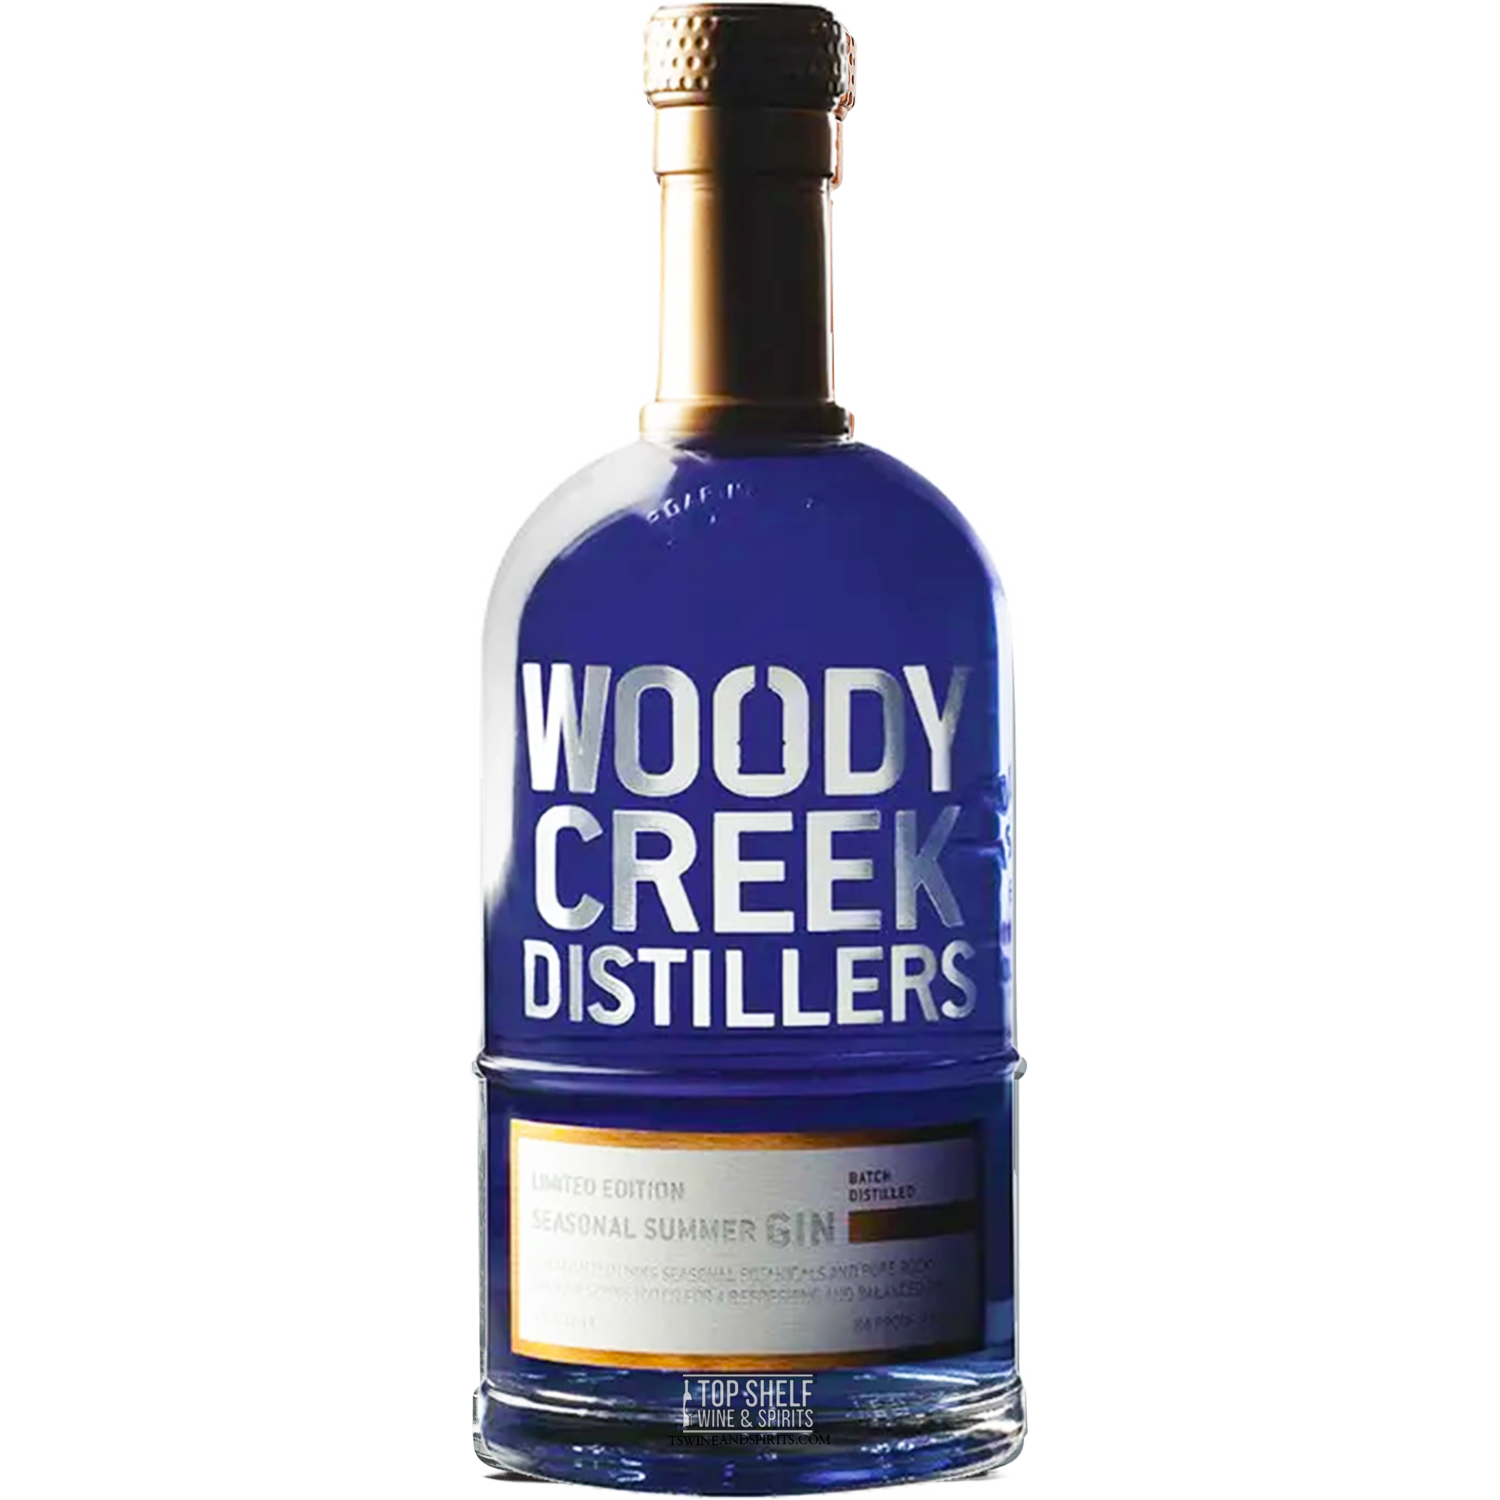 Woody Creek Distillers Seasonal Summer Limited Edition Gin (Batch G-0401-20)